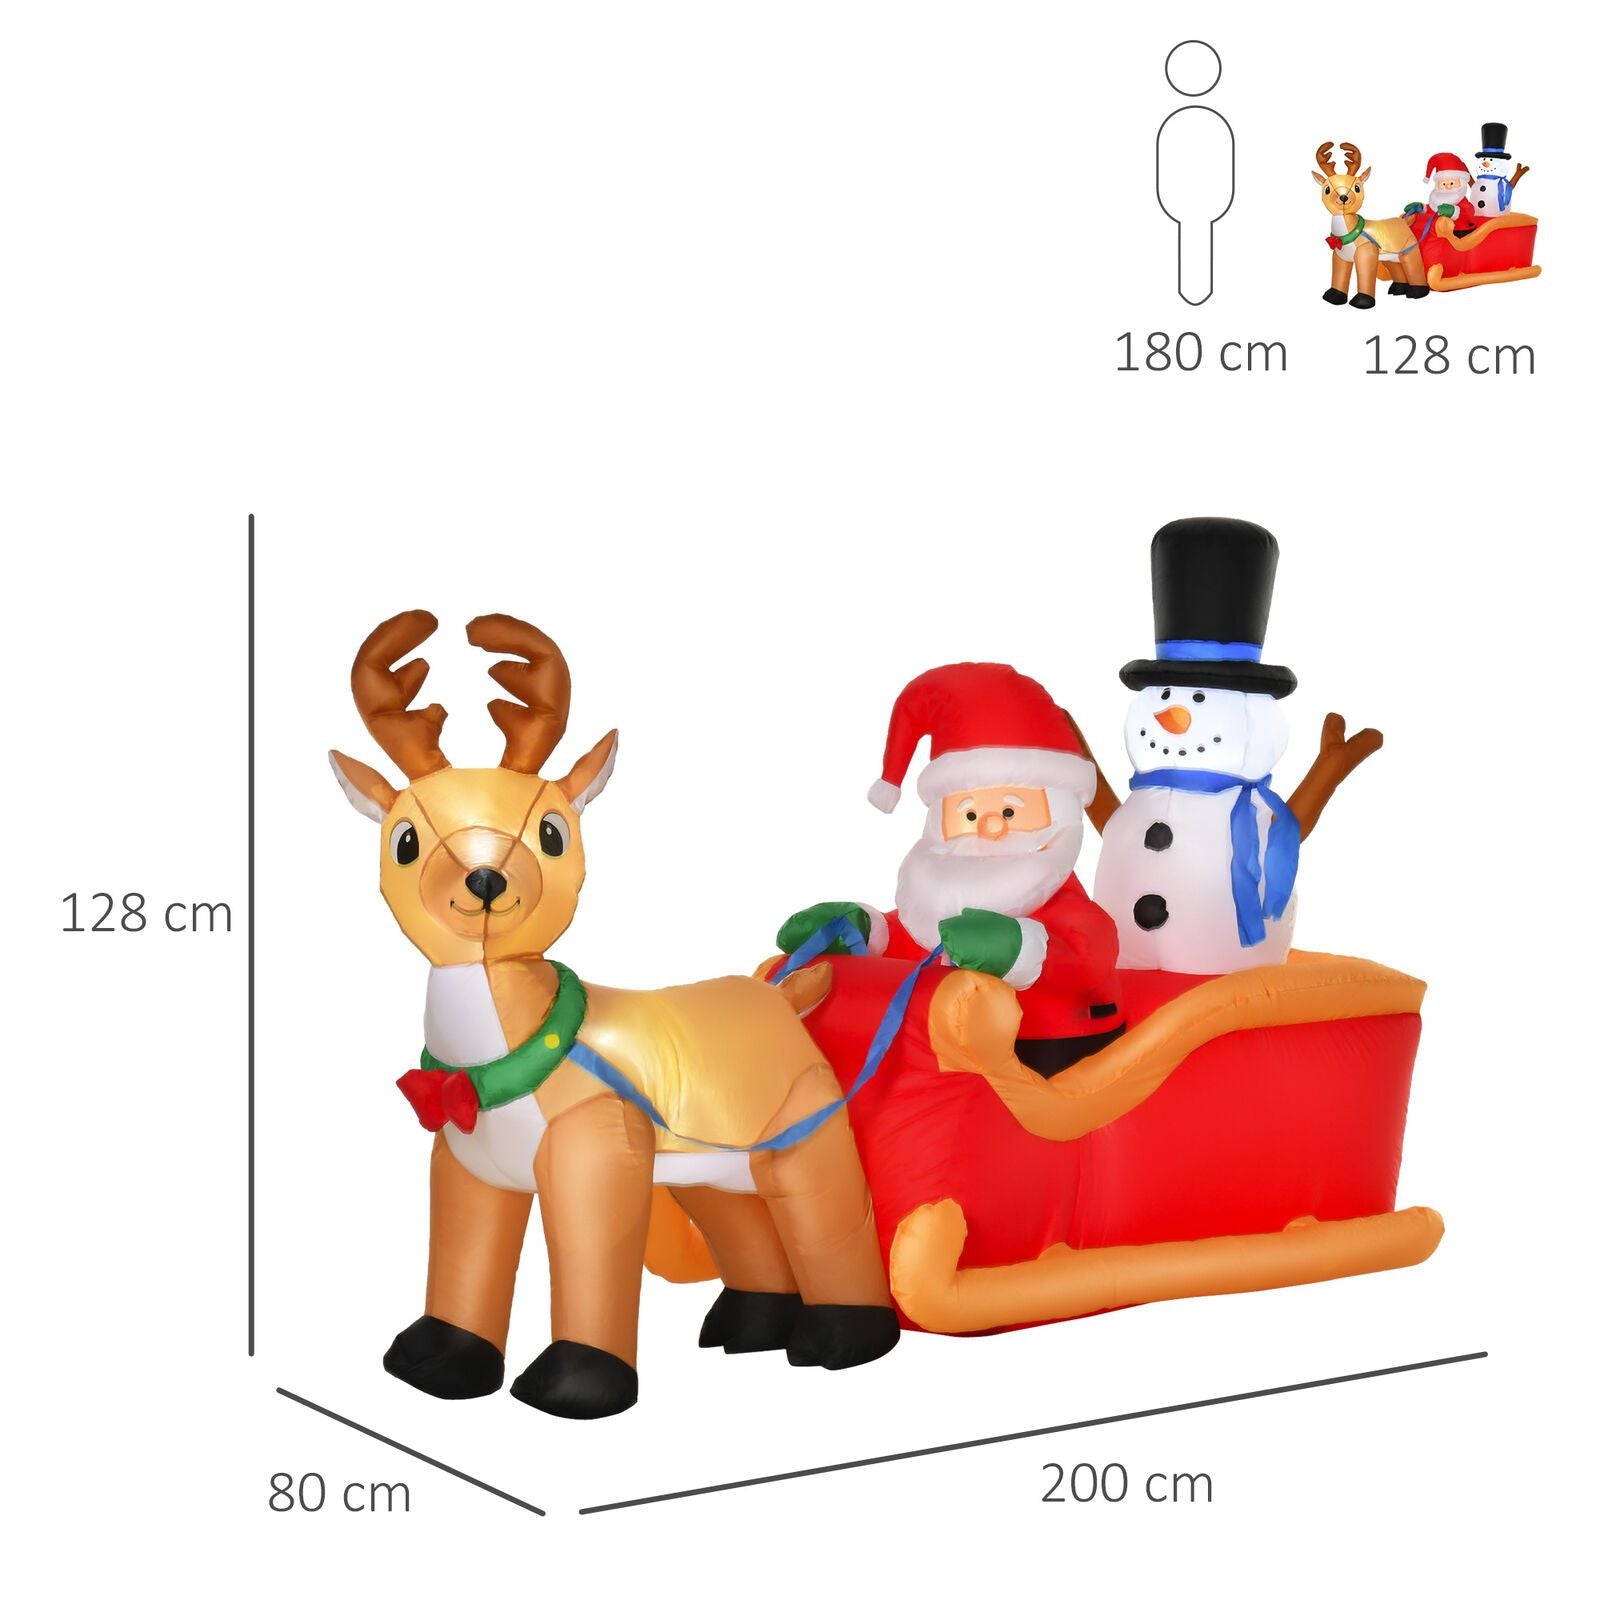 Aufblasbarer Weihnachtsmann mit Schneemann auf Schlitten, 128 cm mit LED-Beleuchtung. Weihnachten Deko Luftfigur